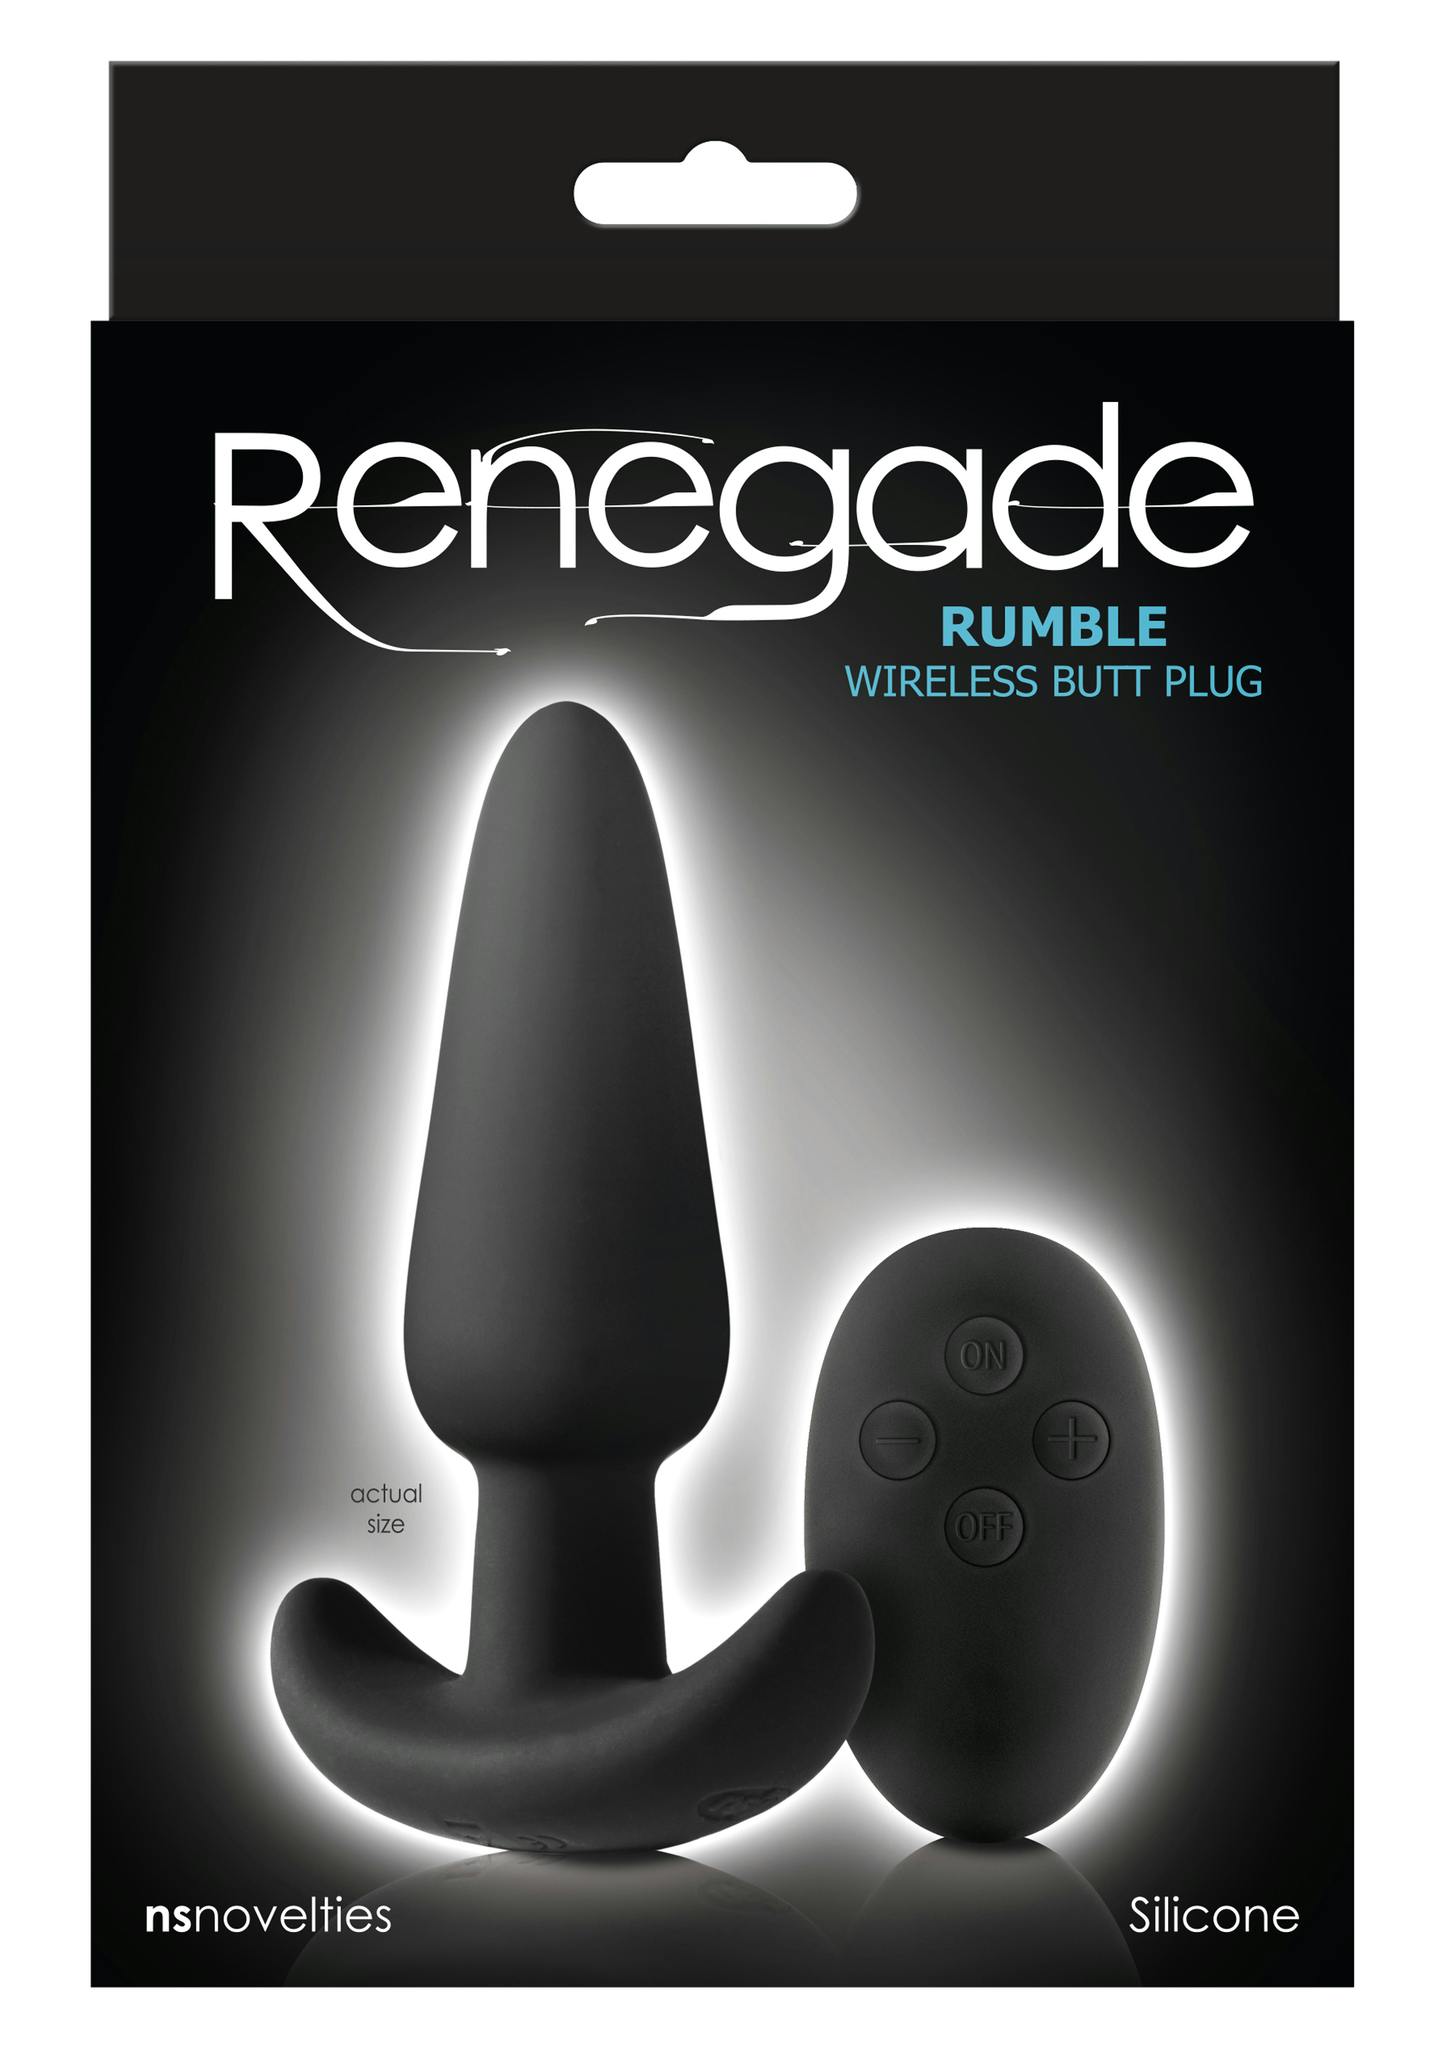 Renegade Rumble Wireless Plug